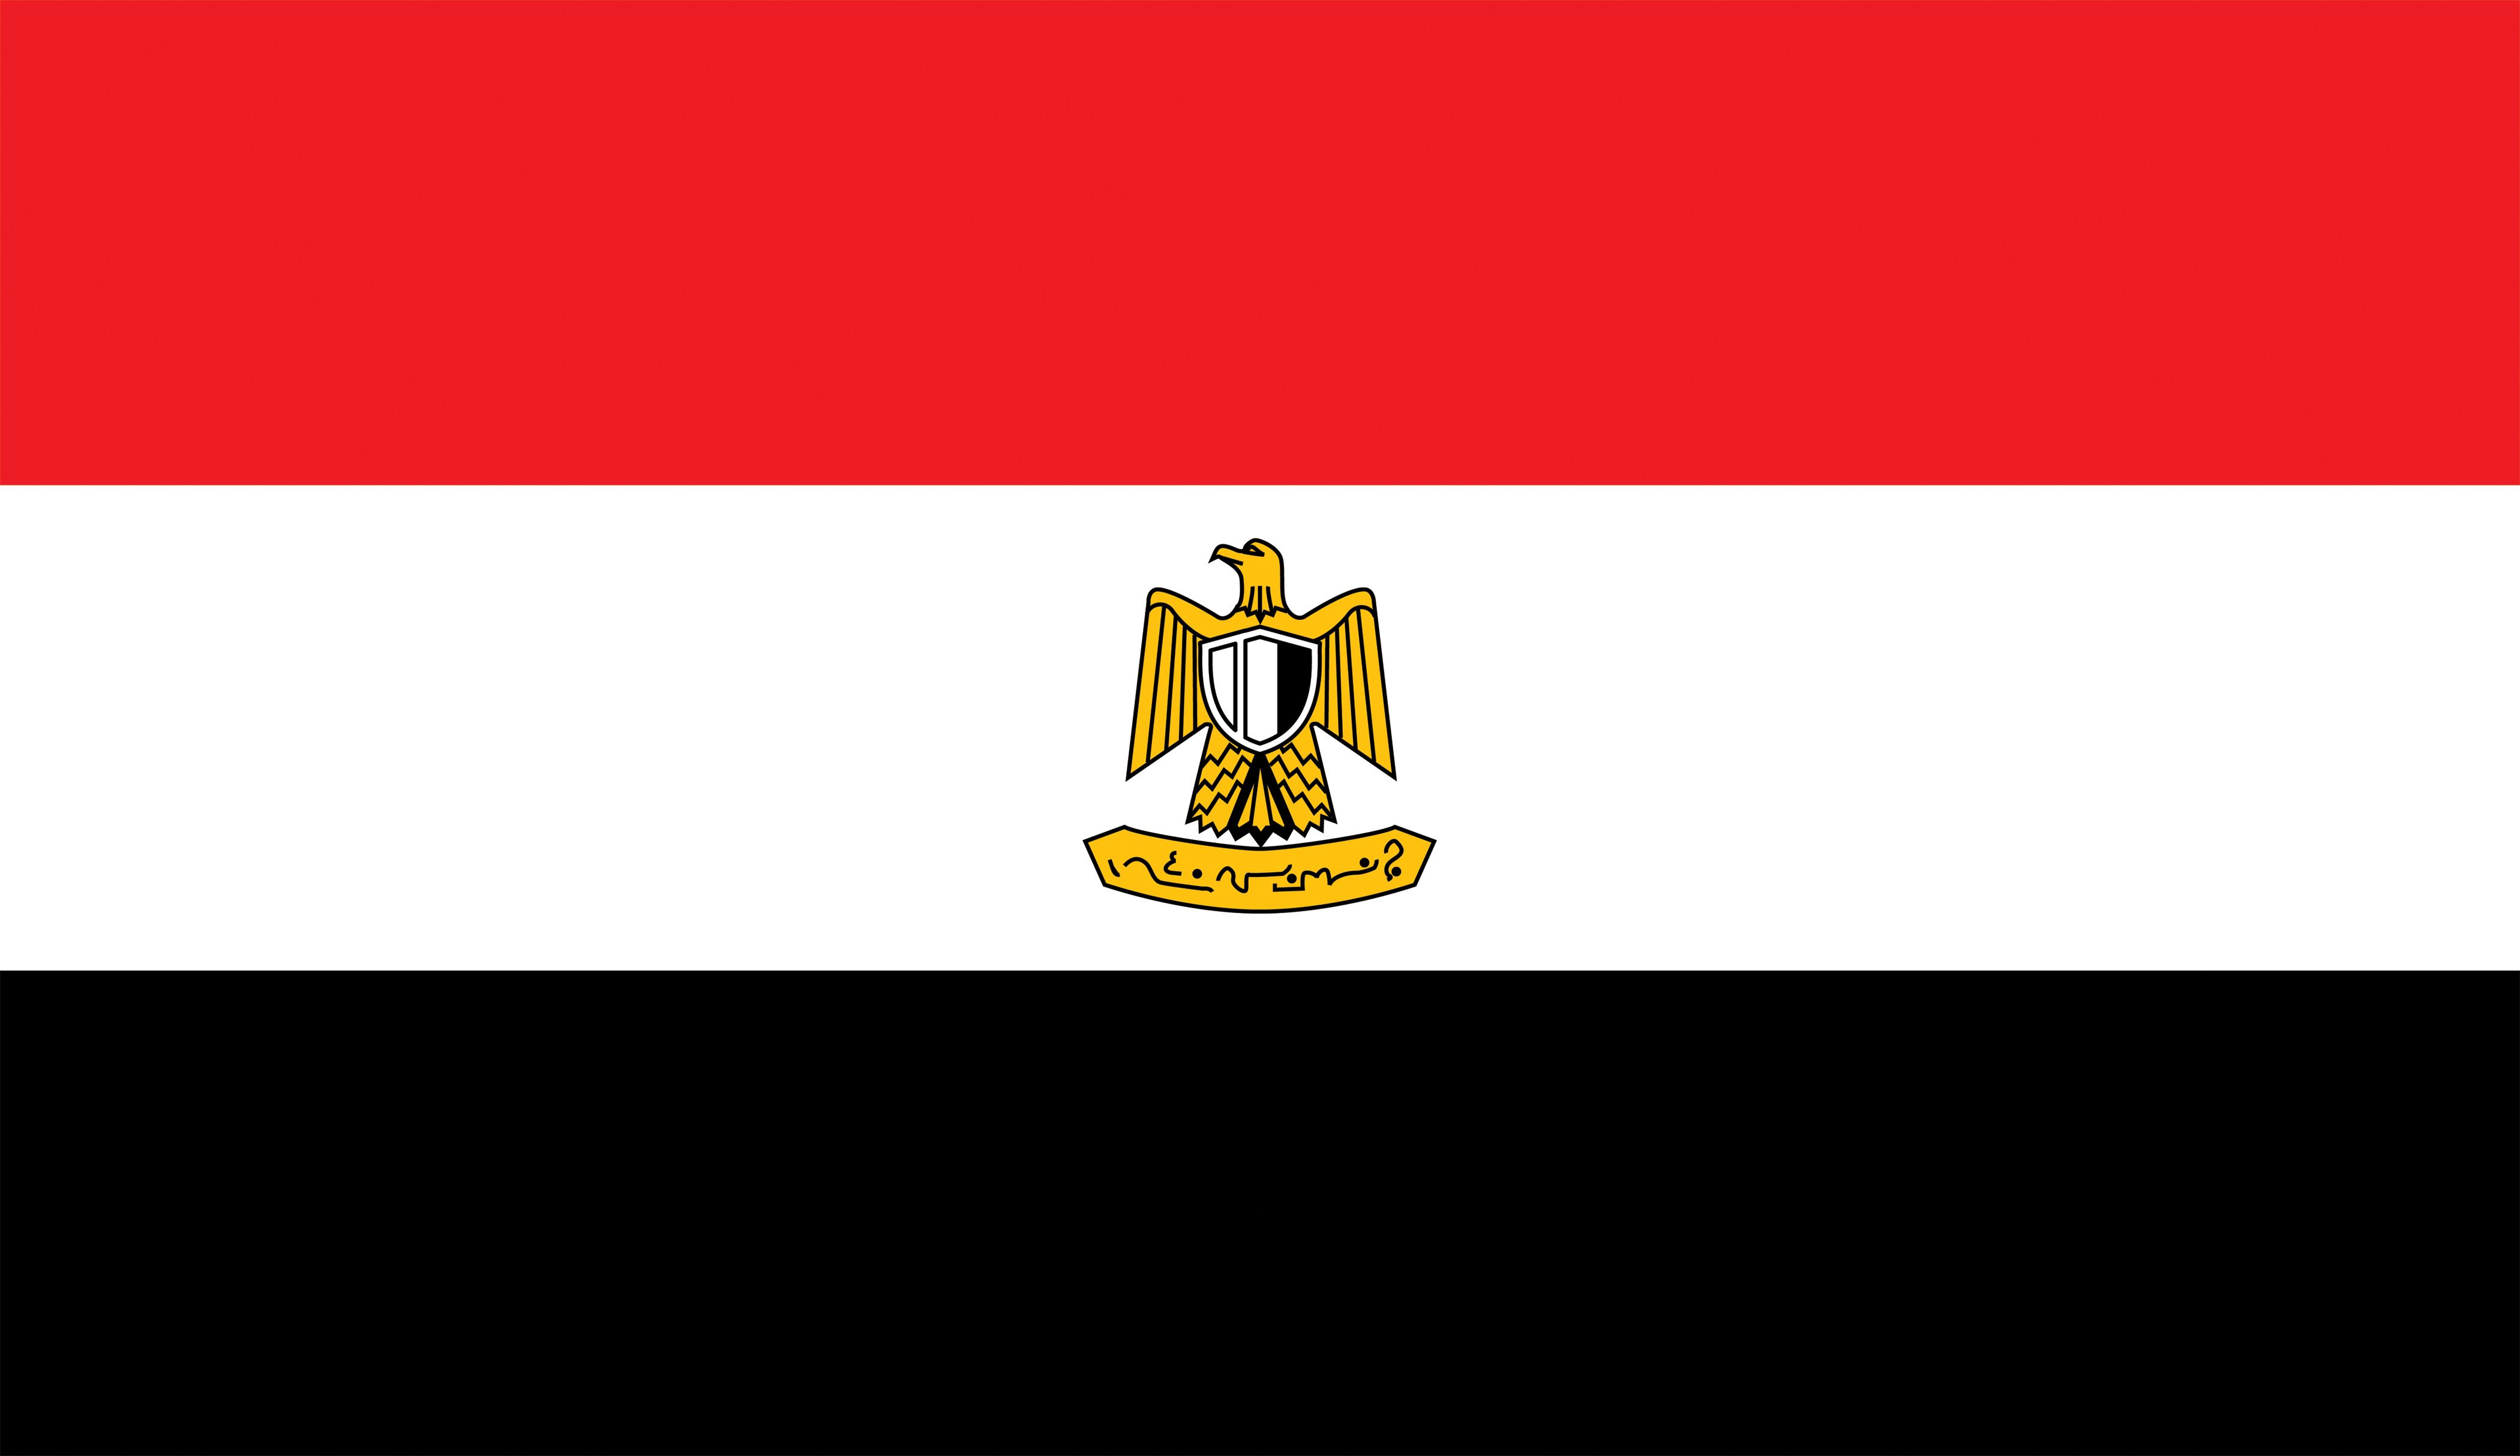 Cuál es la bandera de egipto